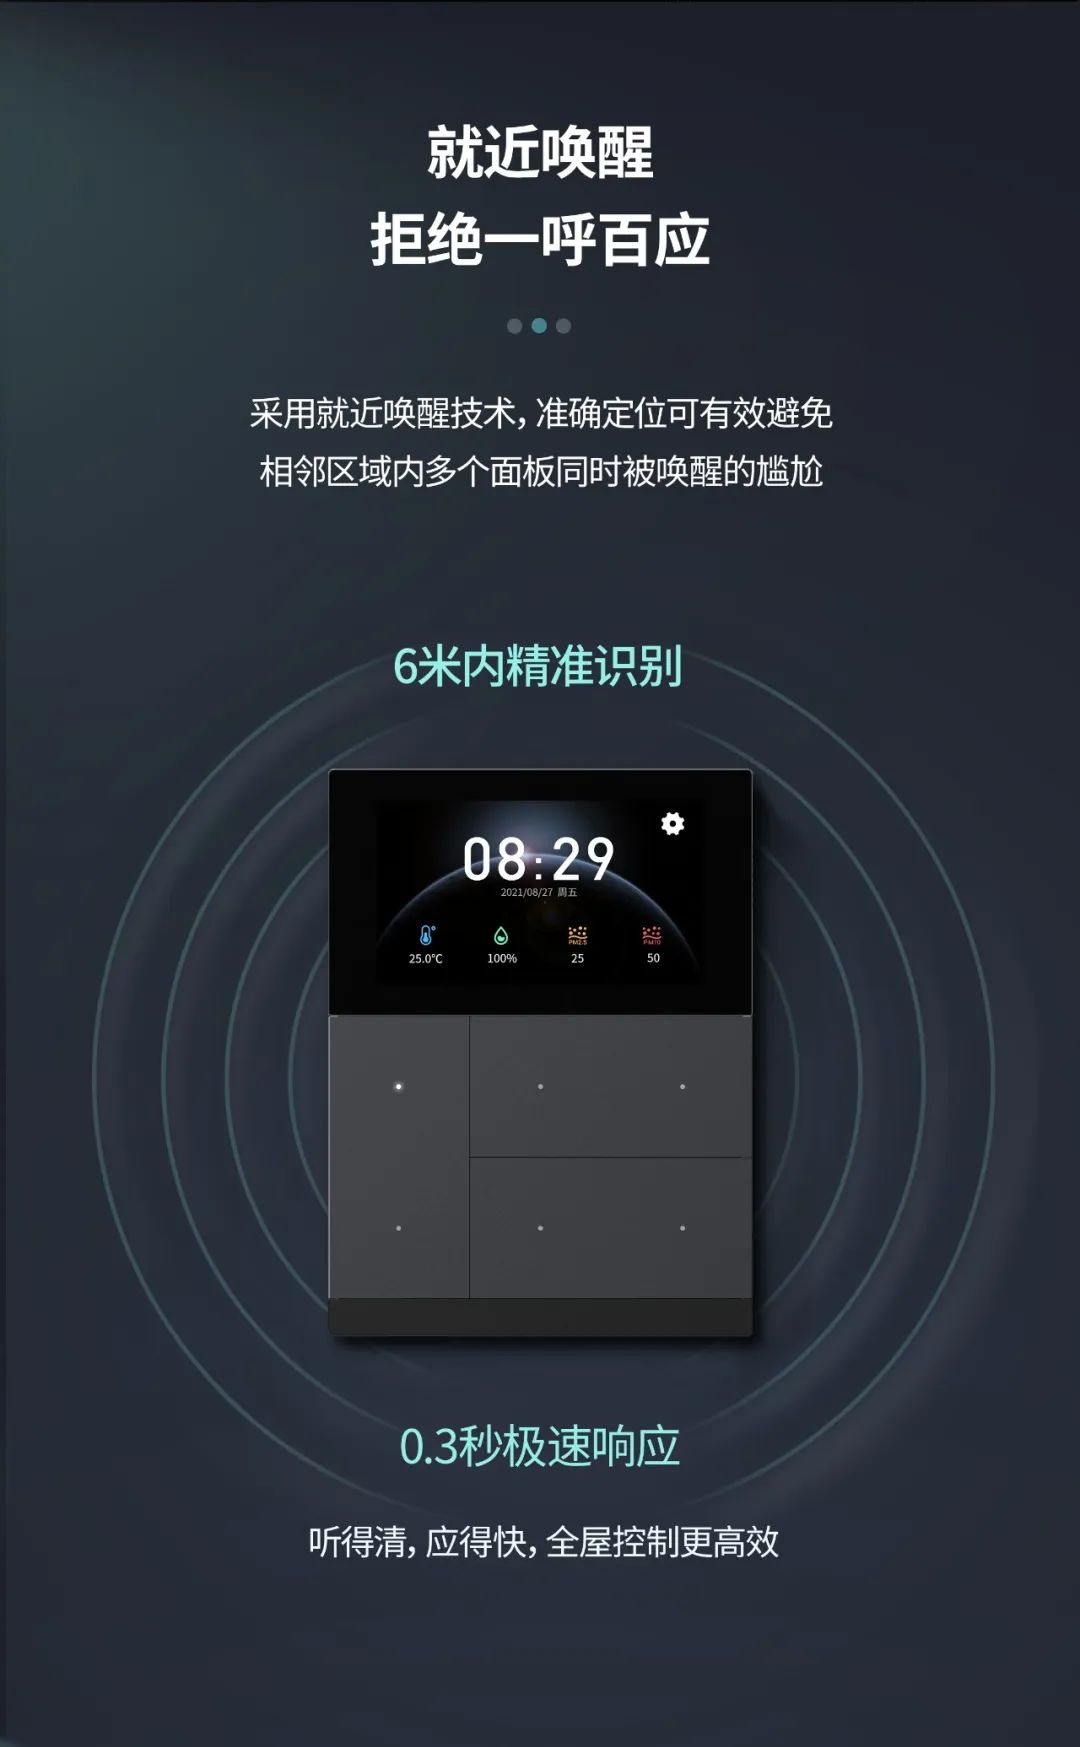 视声发布首款支持按键+触屏+语音控制交互的KNX智能面板